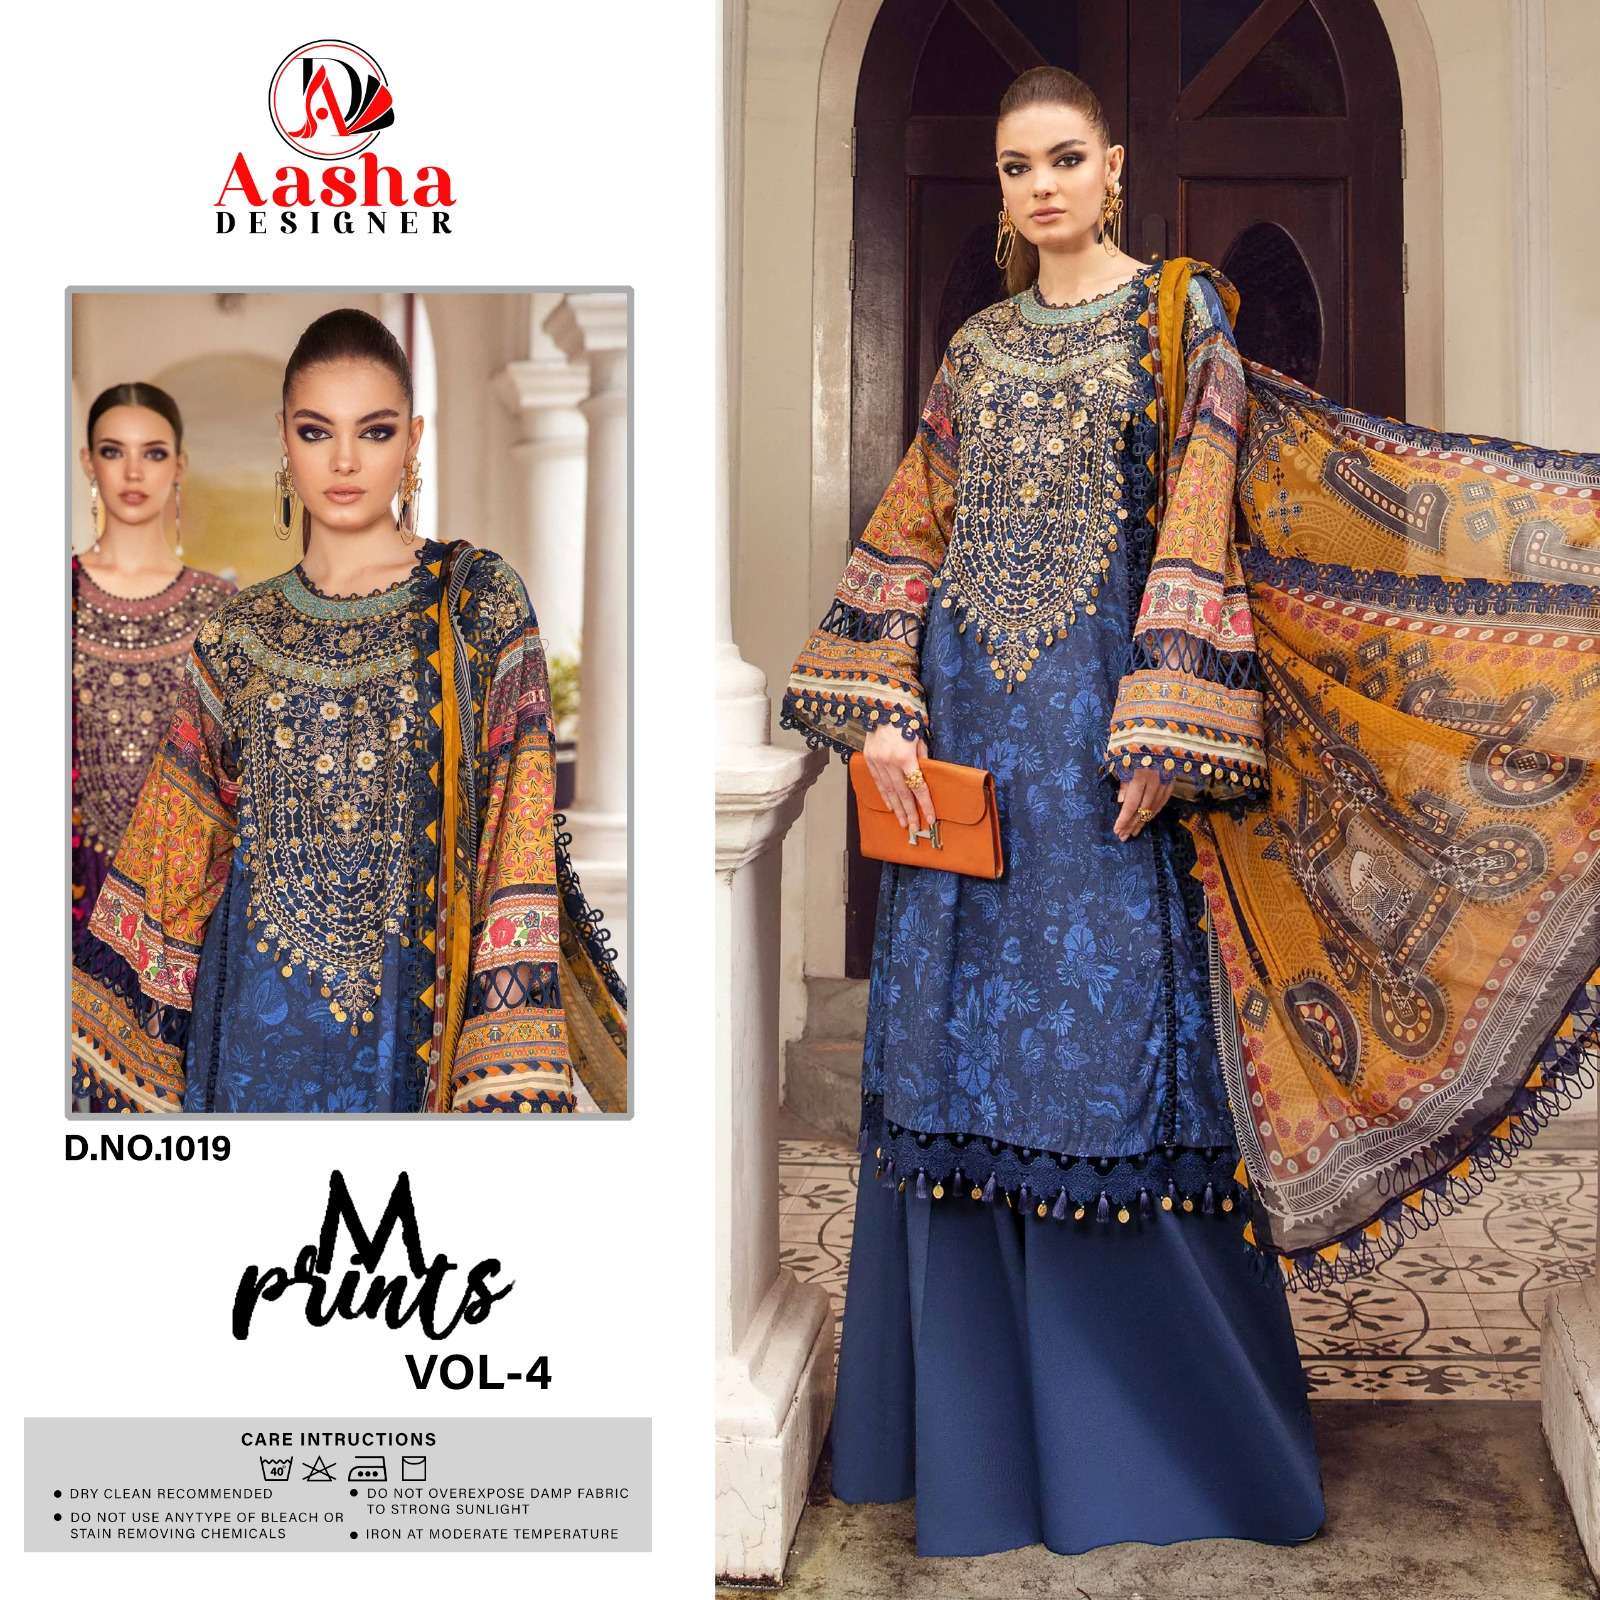 Aasha M Print Vol 4 Cotton Dupatta Pakistani Suits Wholesale catalog